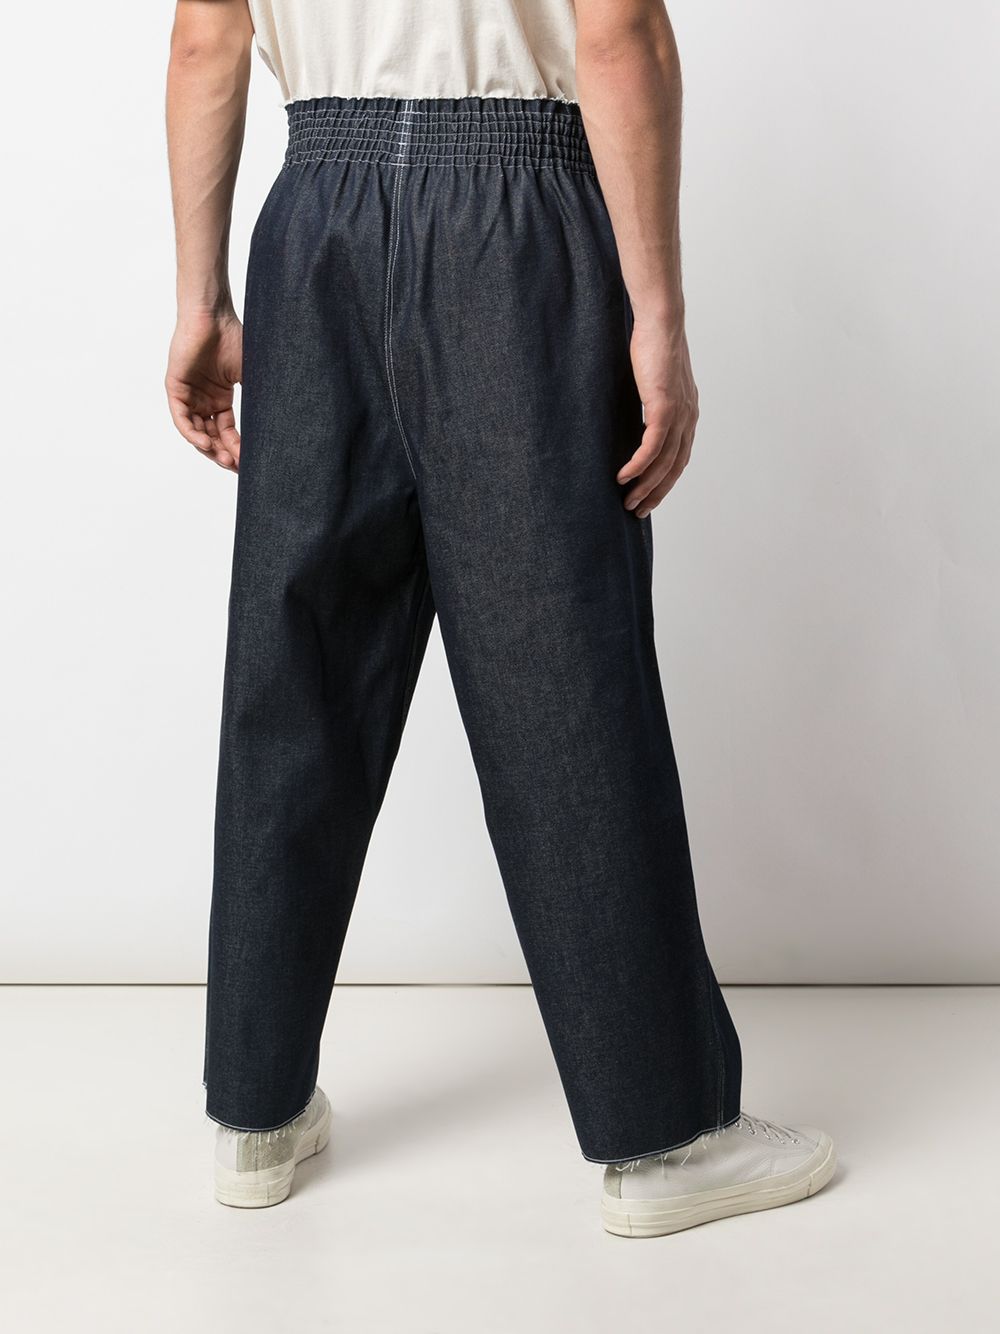 фото Camiel Fortgens брюки с эластичным поясом